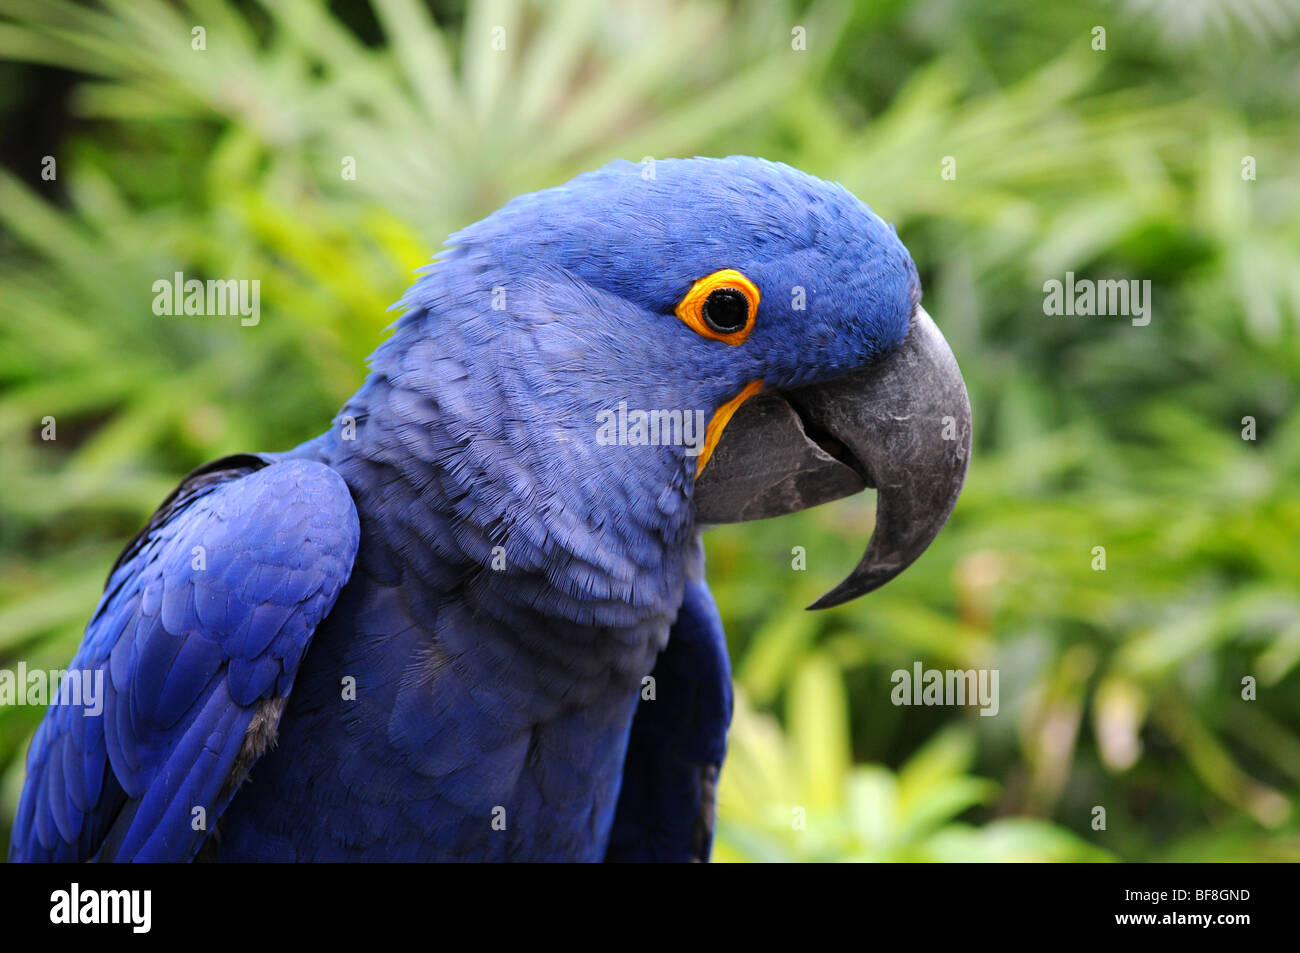 Giacinto blu macaw pappagallo nel suo ambiente naturale Foto Stock